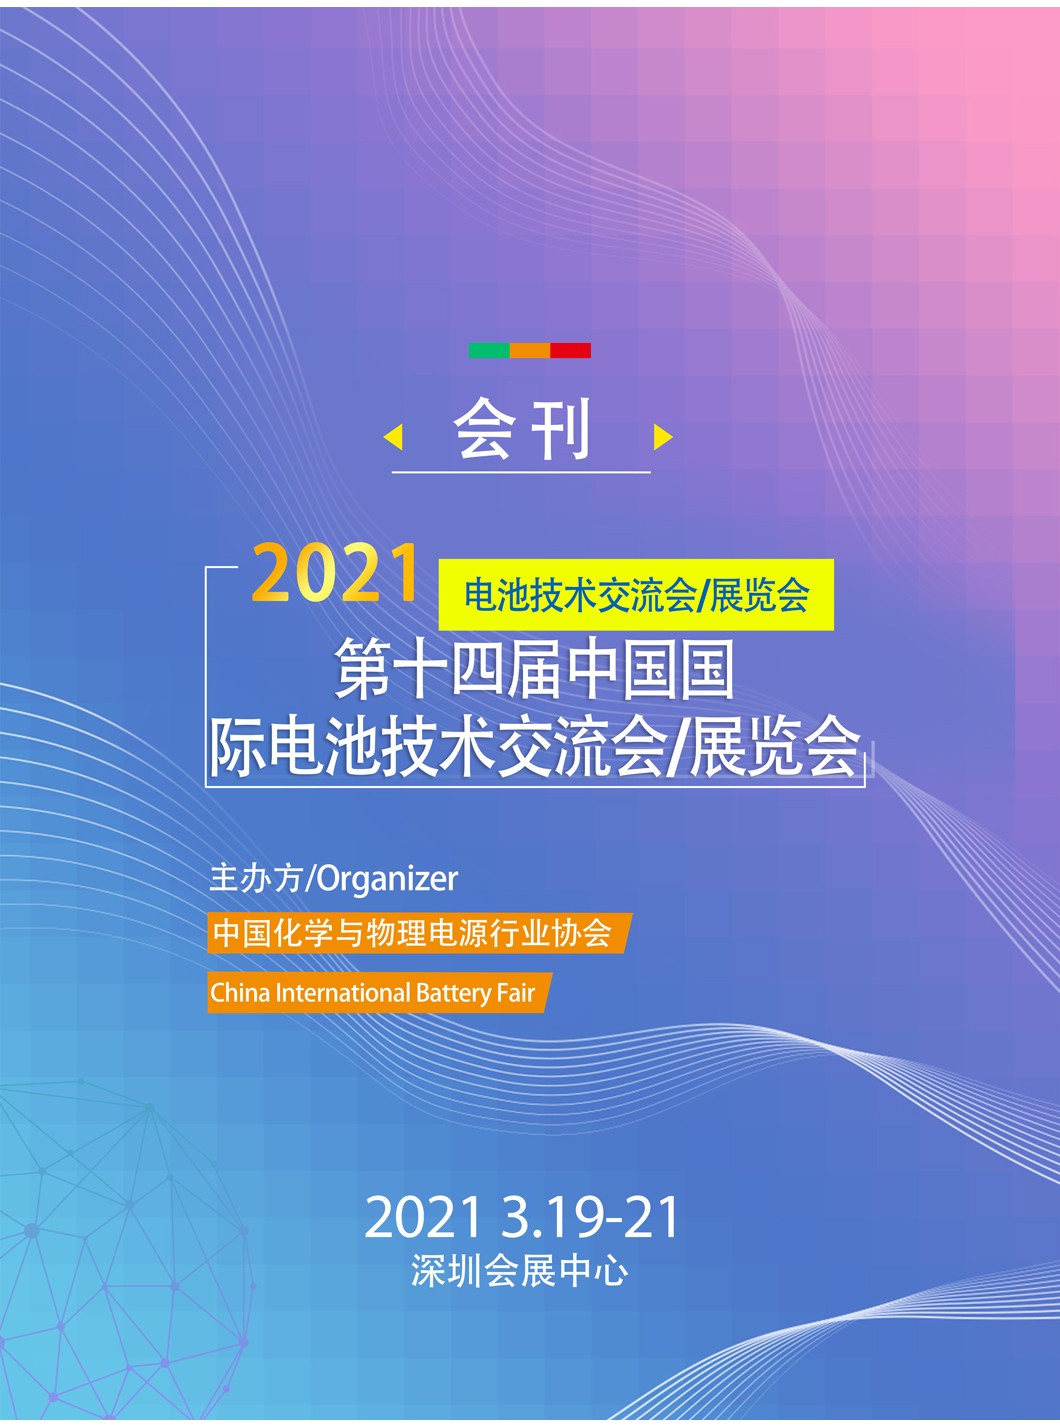 第十四屆中國國際電池技術交流會/展覽會  CIBF2021  全球動力電池  儲能電池  3C電池 